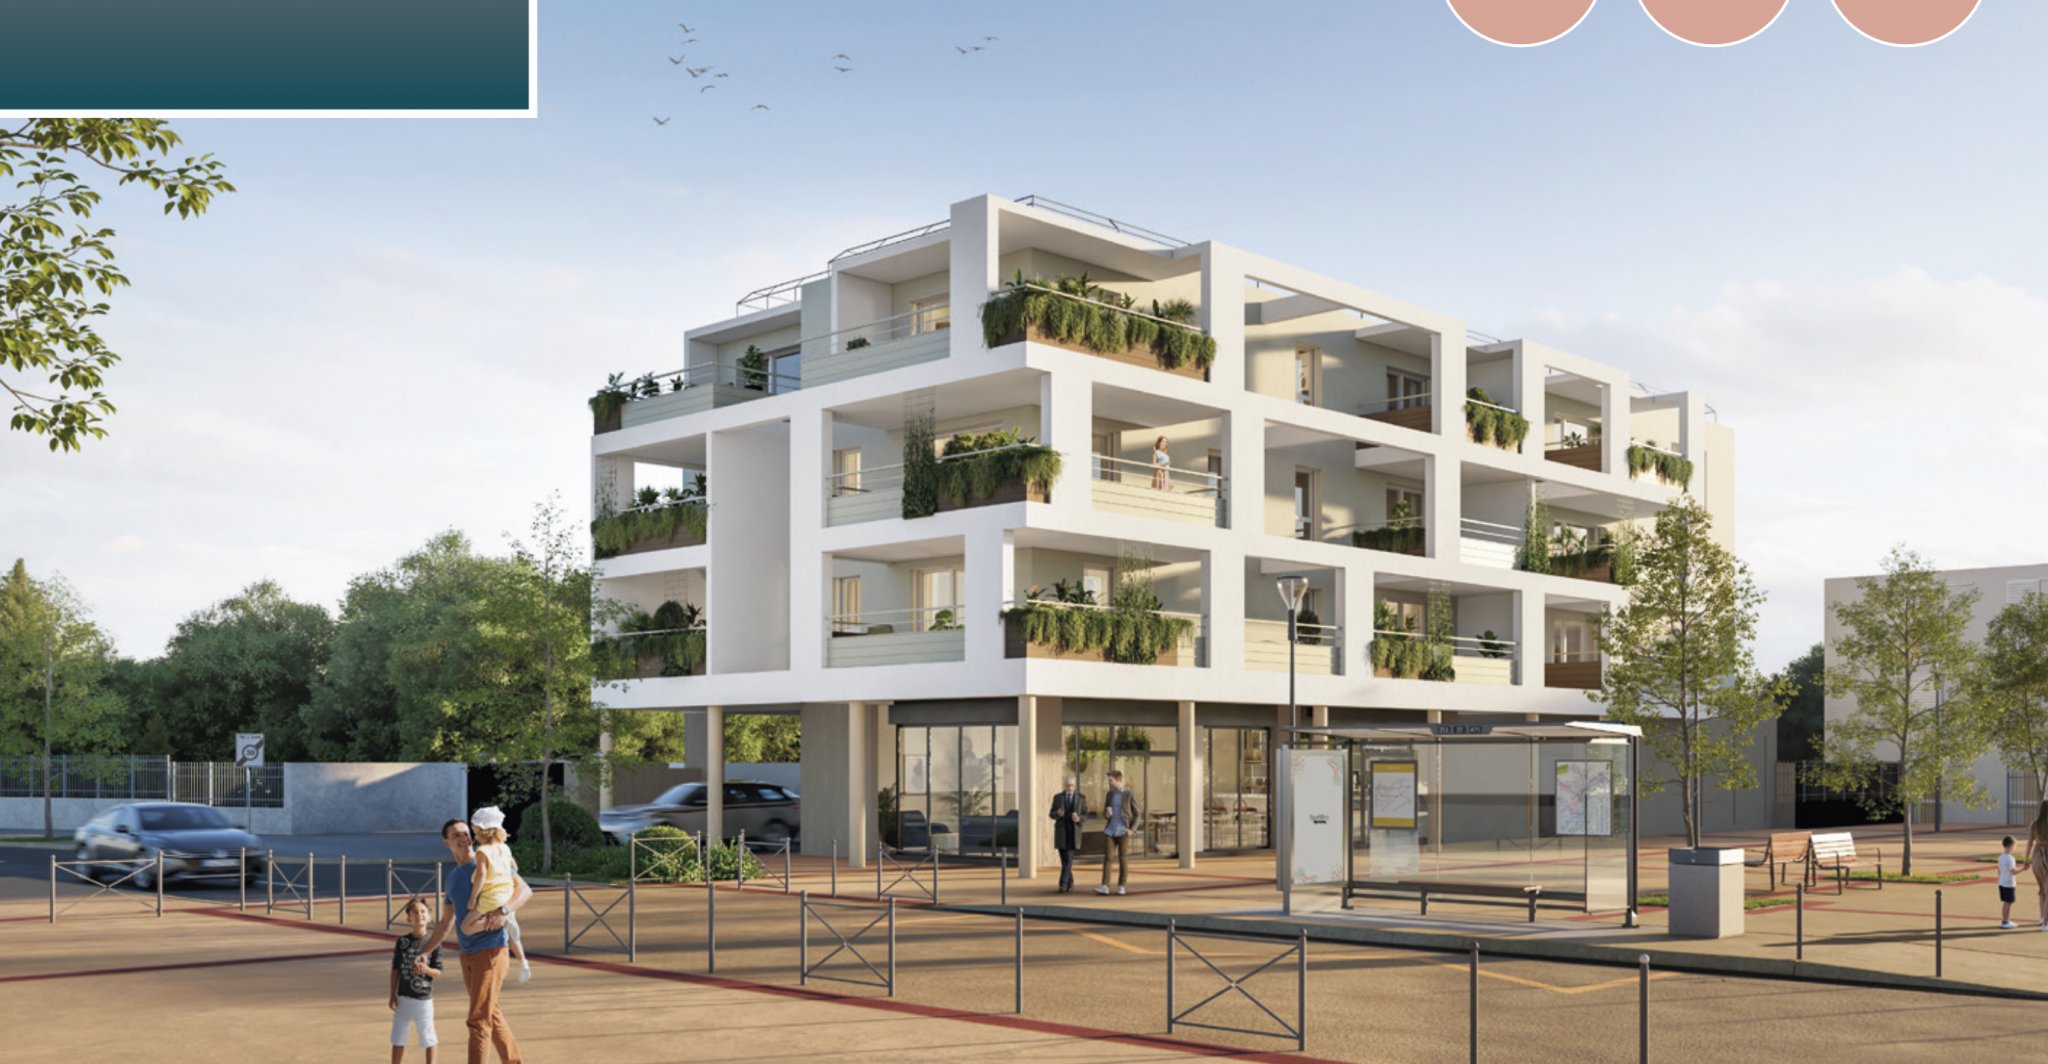 Programme immobilier neuf à Béziers (1 à 4 pièces, 40 à 87 m²) Boujan-sur-Libron